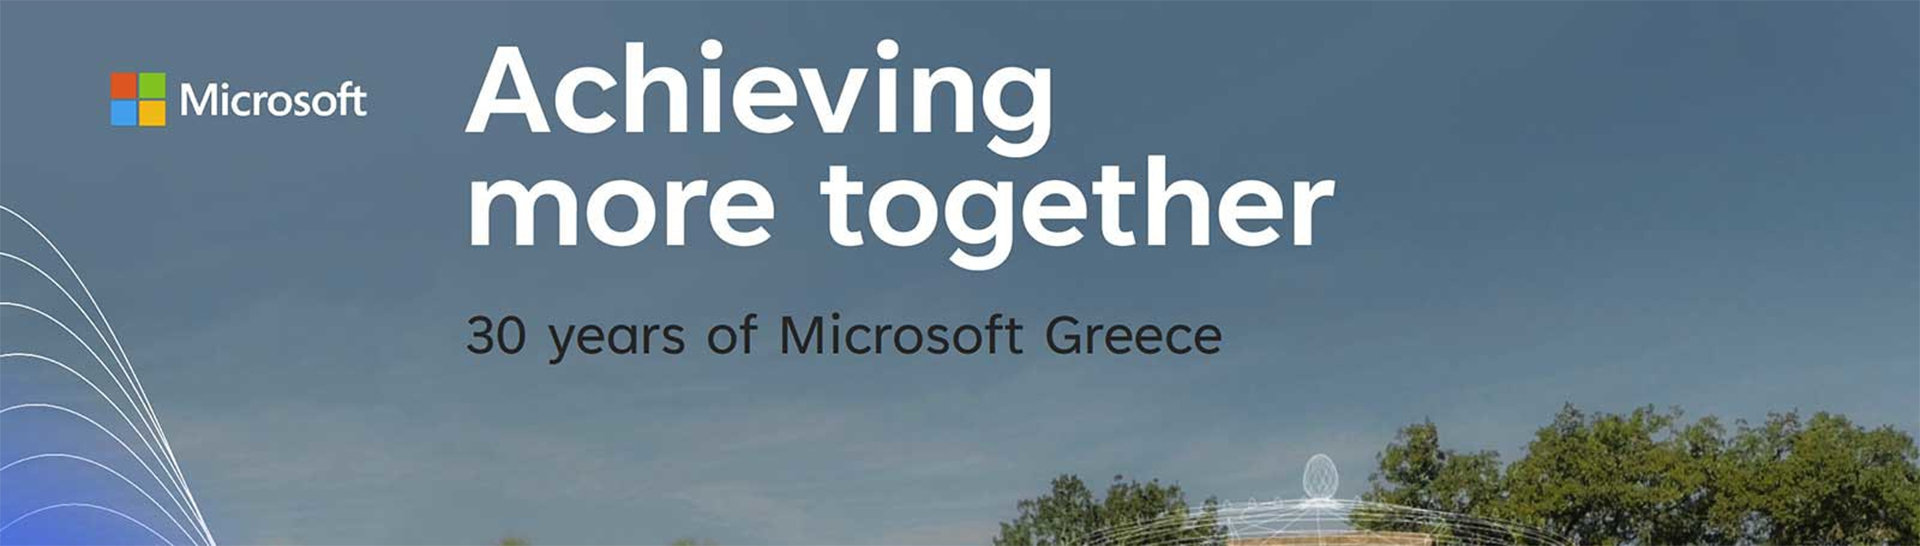 Μια φωτογραφία της Αρχαίας Ολυμπίας σε τεχνητή νοημοσύνη που έχει ένα λογότυπο της Microsoft πάνω της, ένα λογότυπο Gr for Growth και τις λέξεις "Achieving more together: 30 Years of Microsoft Greece".